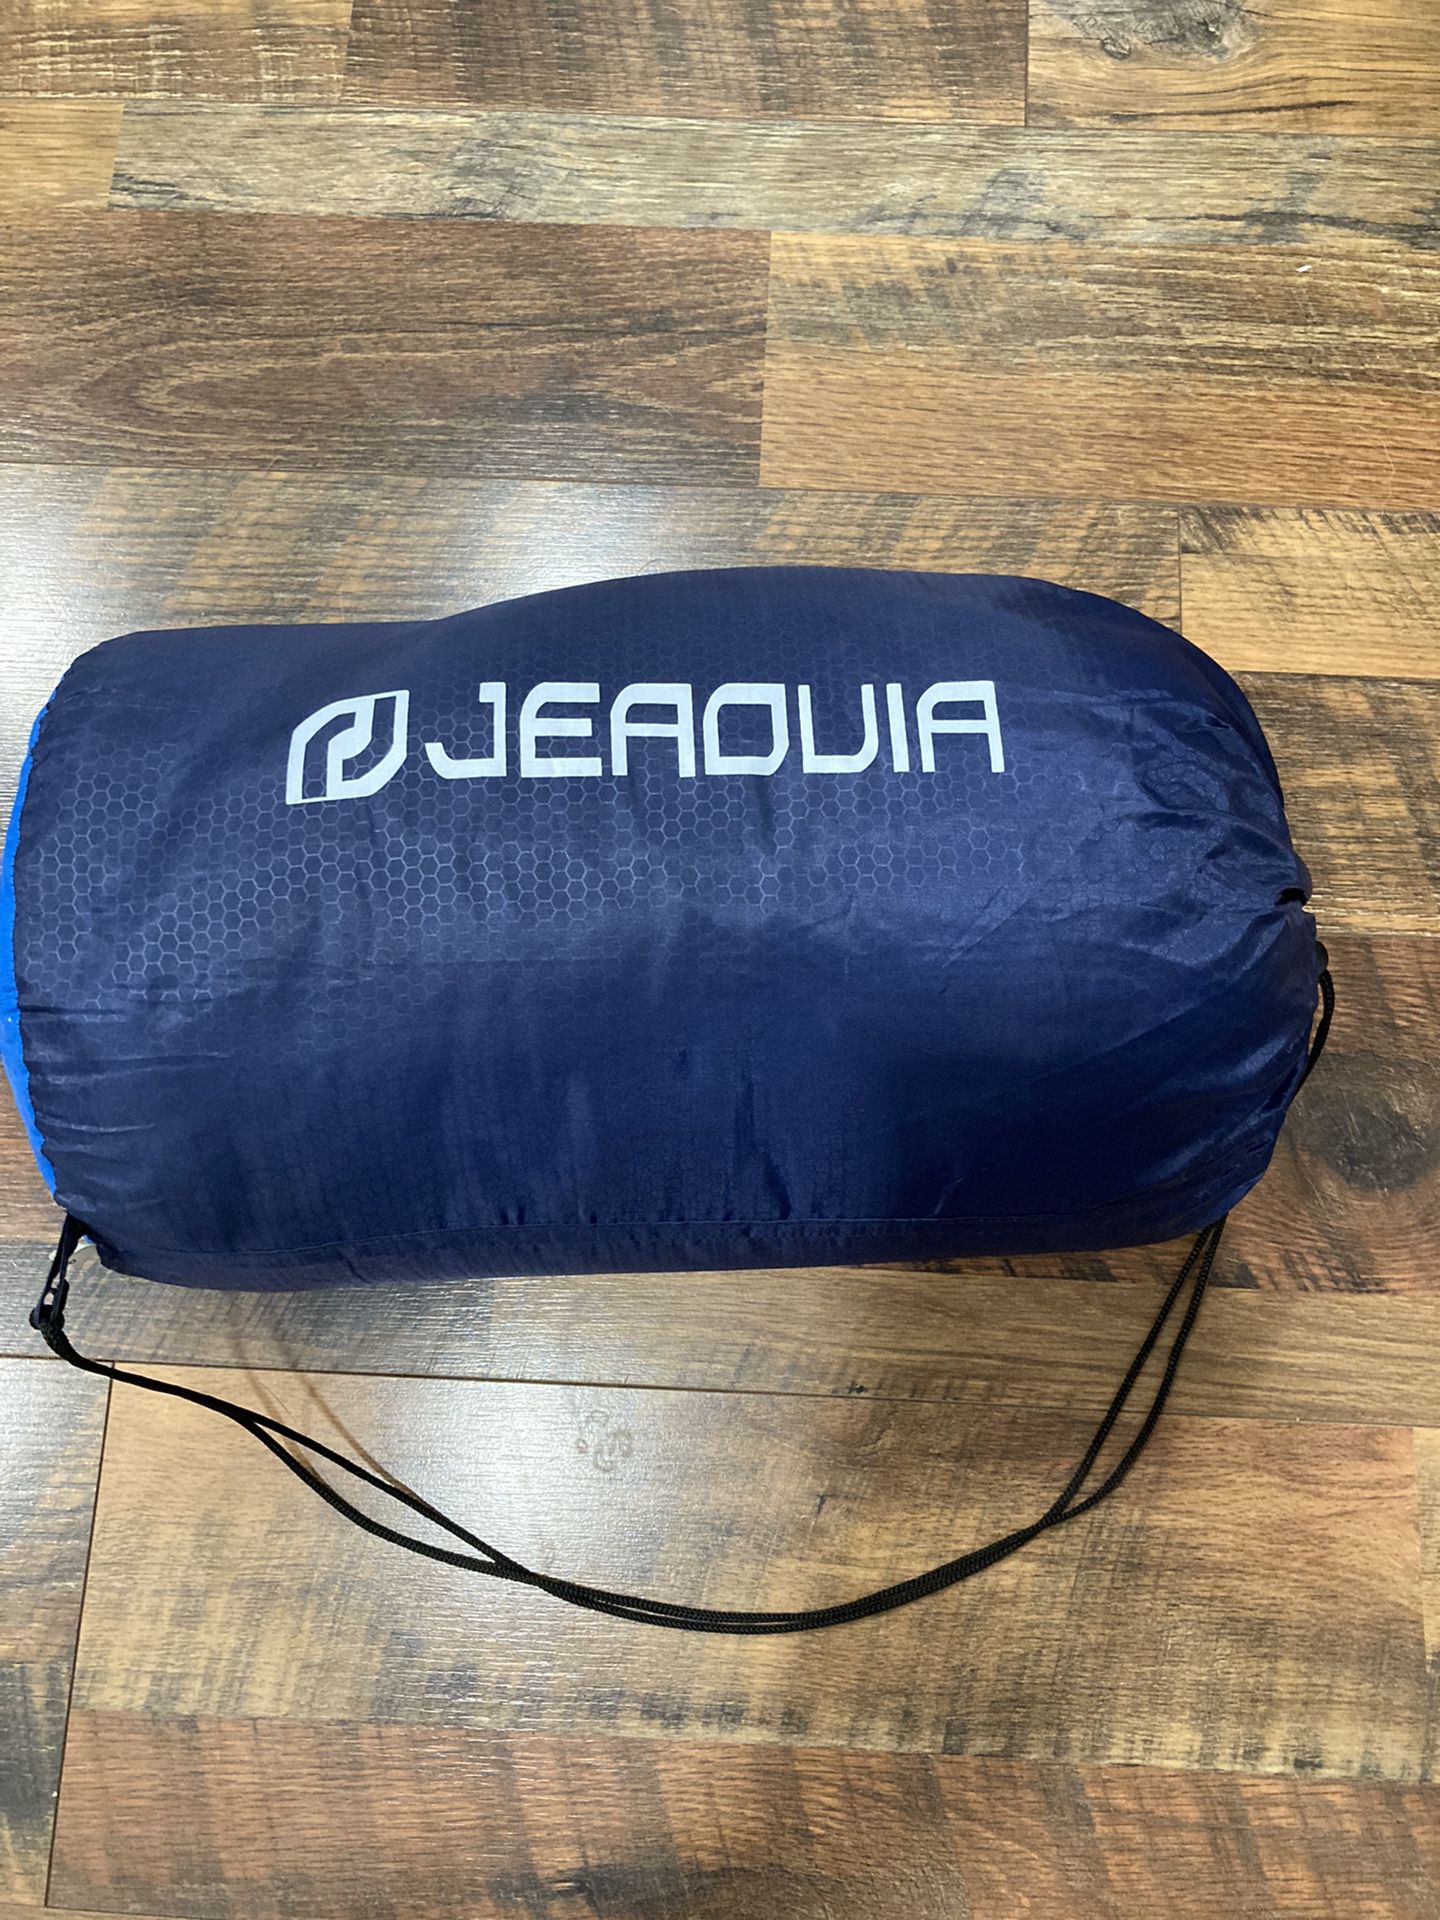 Jeaouia Backpacking Sleeping Bag 